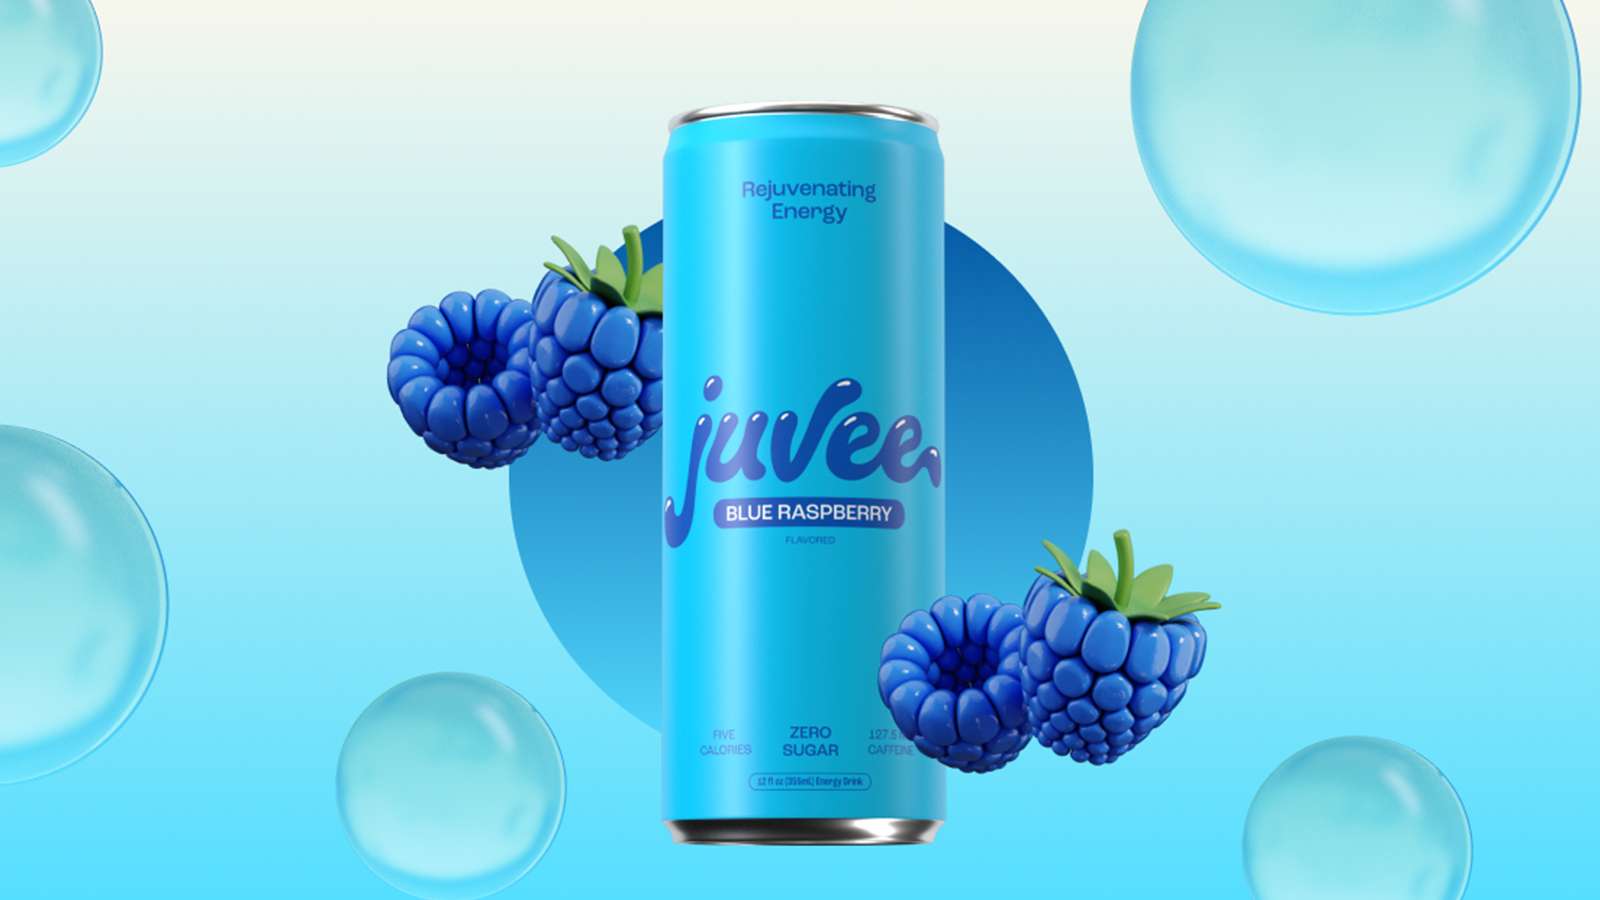 Juvee Blue Raspberry header